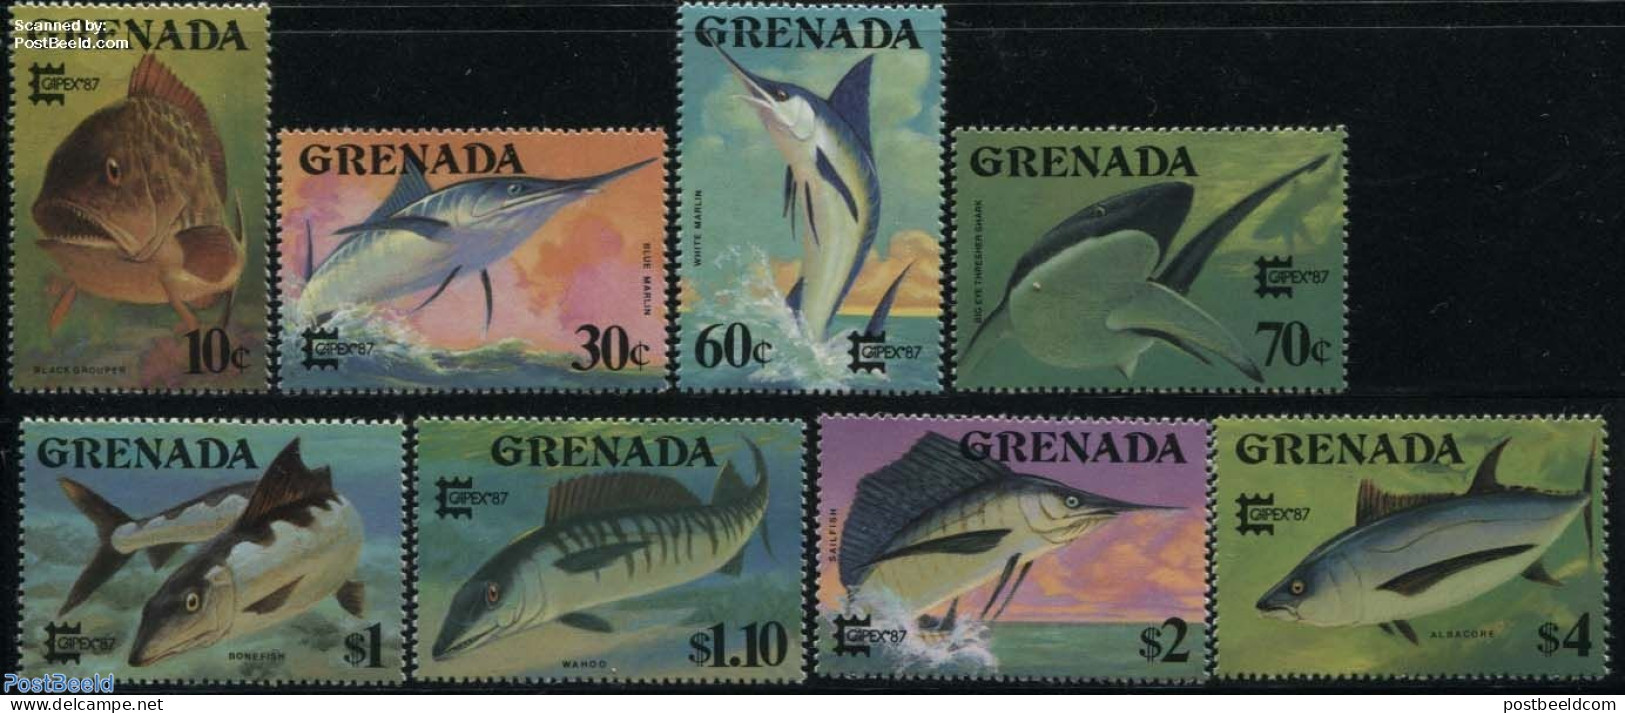 Grenada 1987 Capex, Fish 8v, Mint NH, Nature - Fish - Poissons